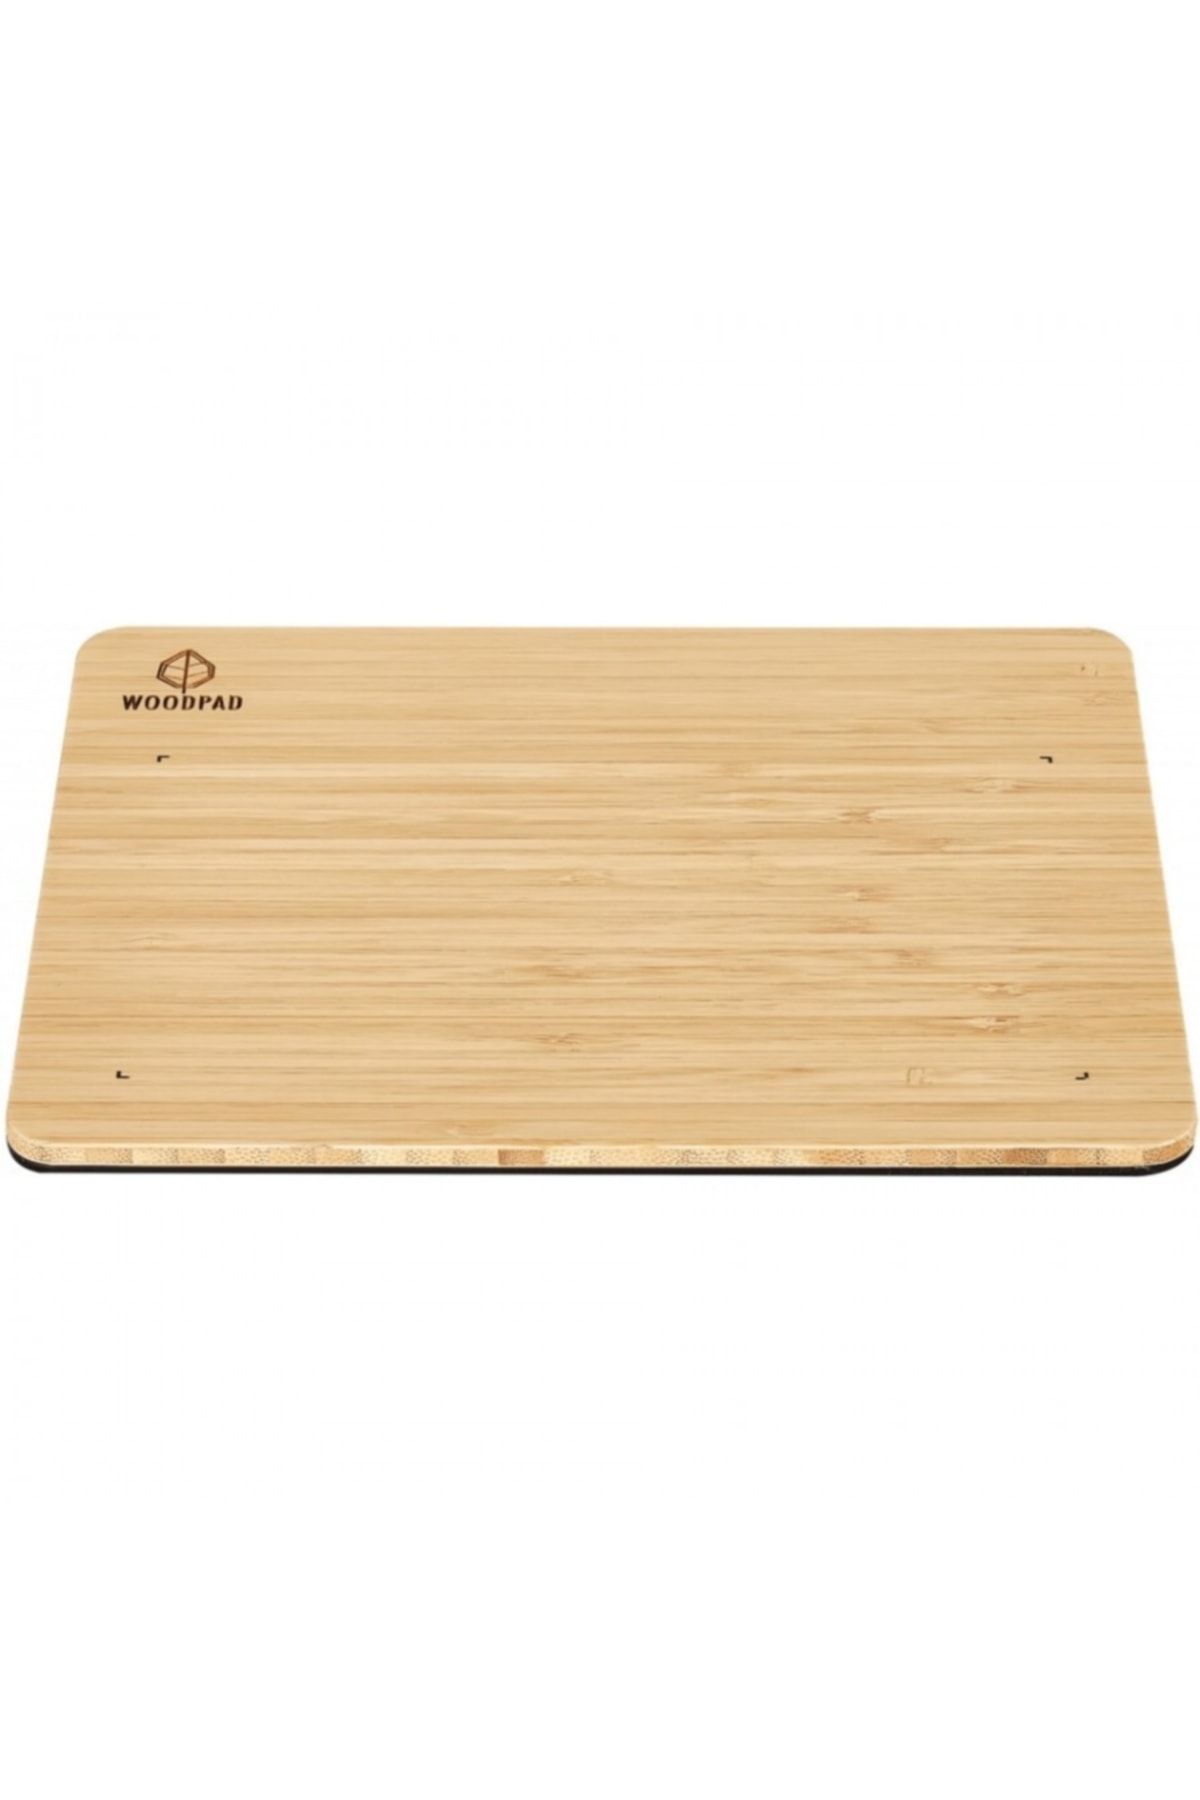 ViewSonic Woodpad 7 Bambu Grafık Tablet - Pf0730-e0ww-2